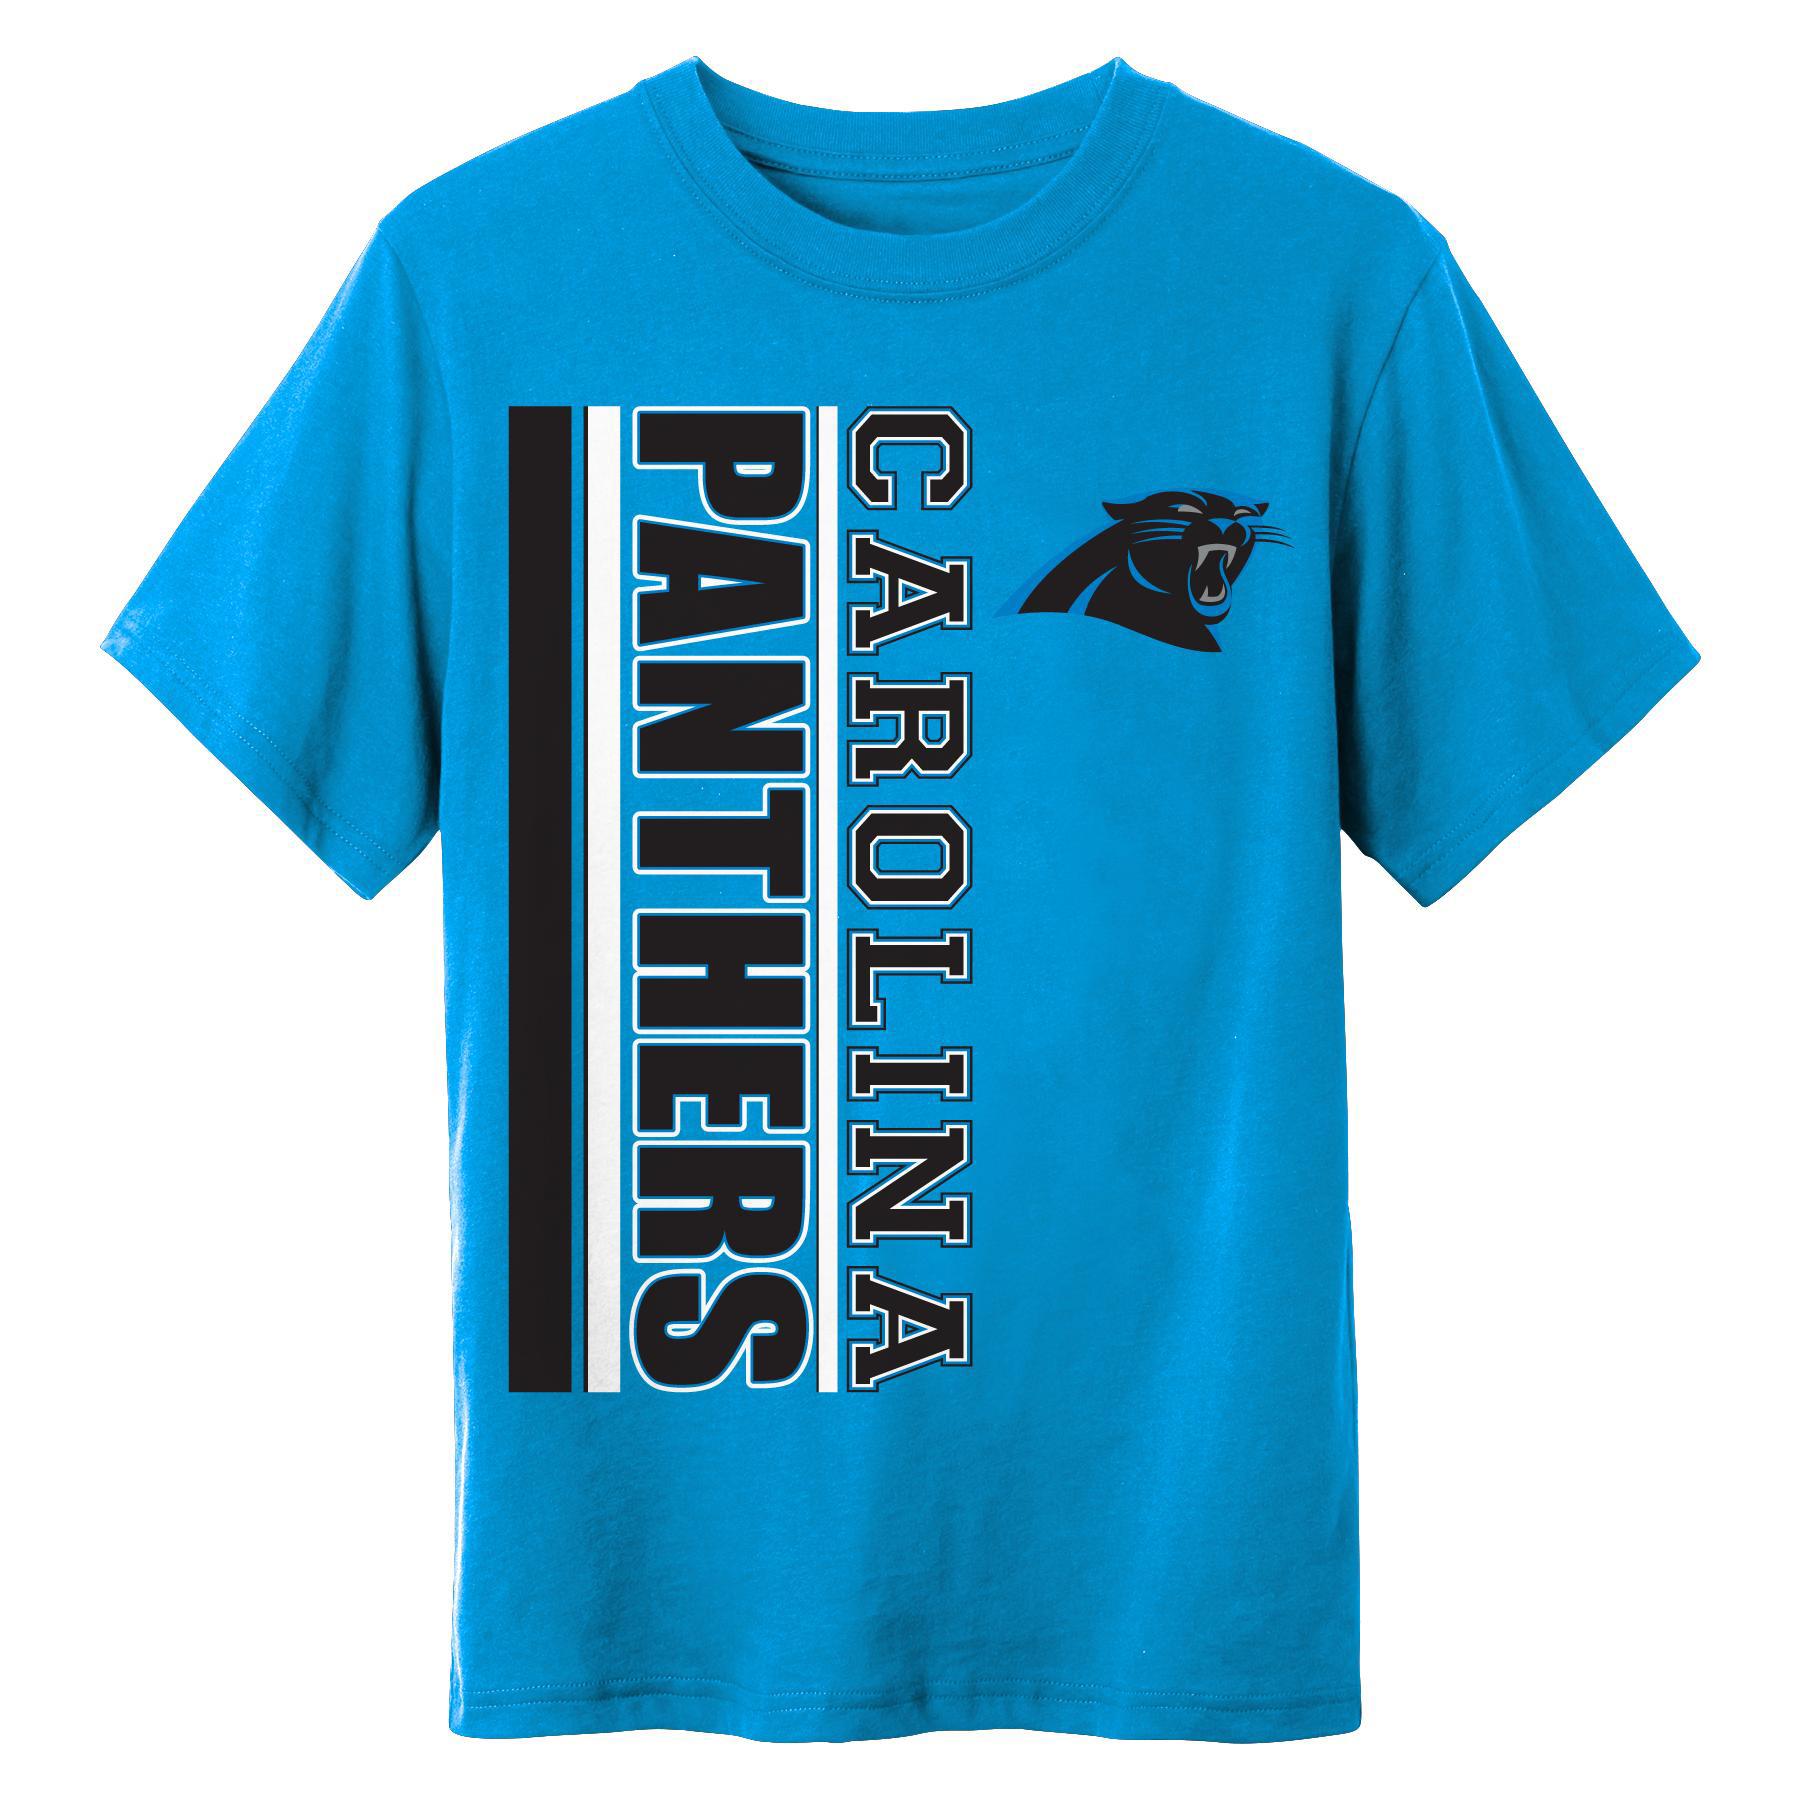 NFL Boys' T-Shirt - Carolina Panthers